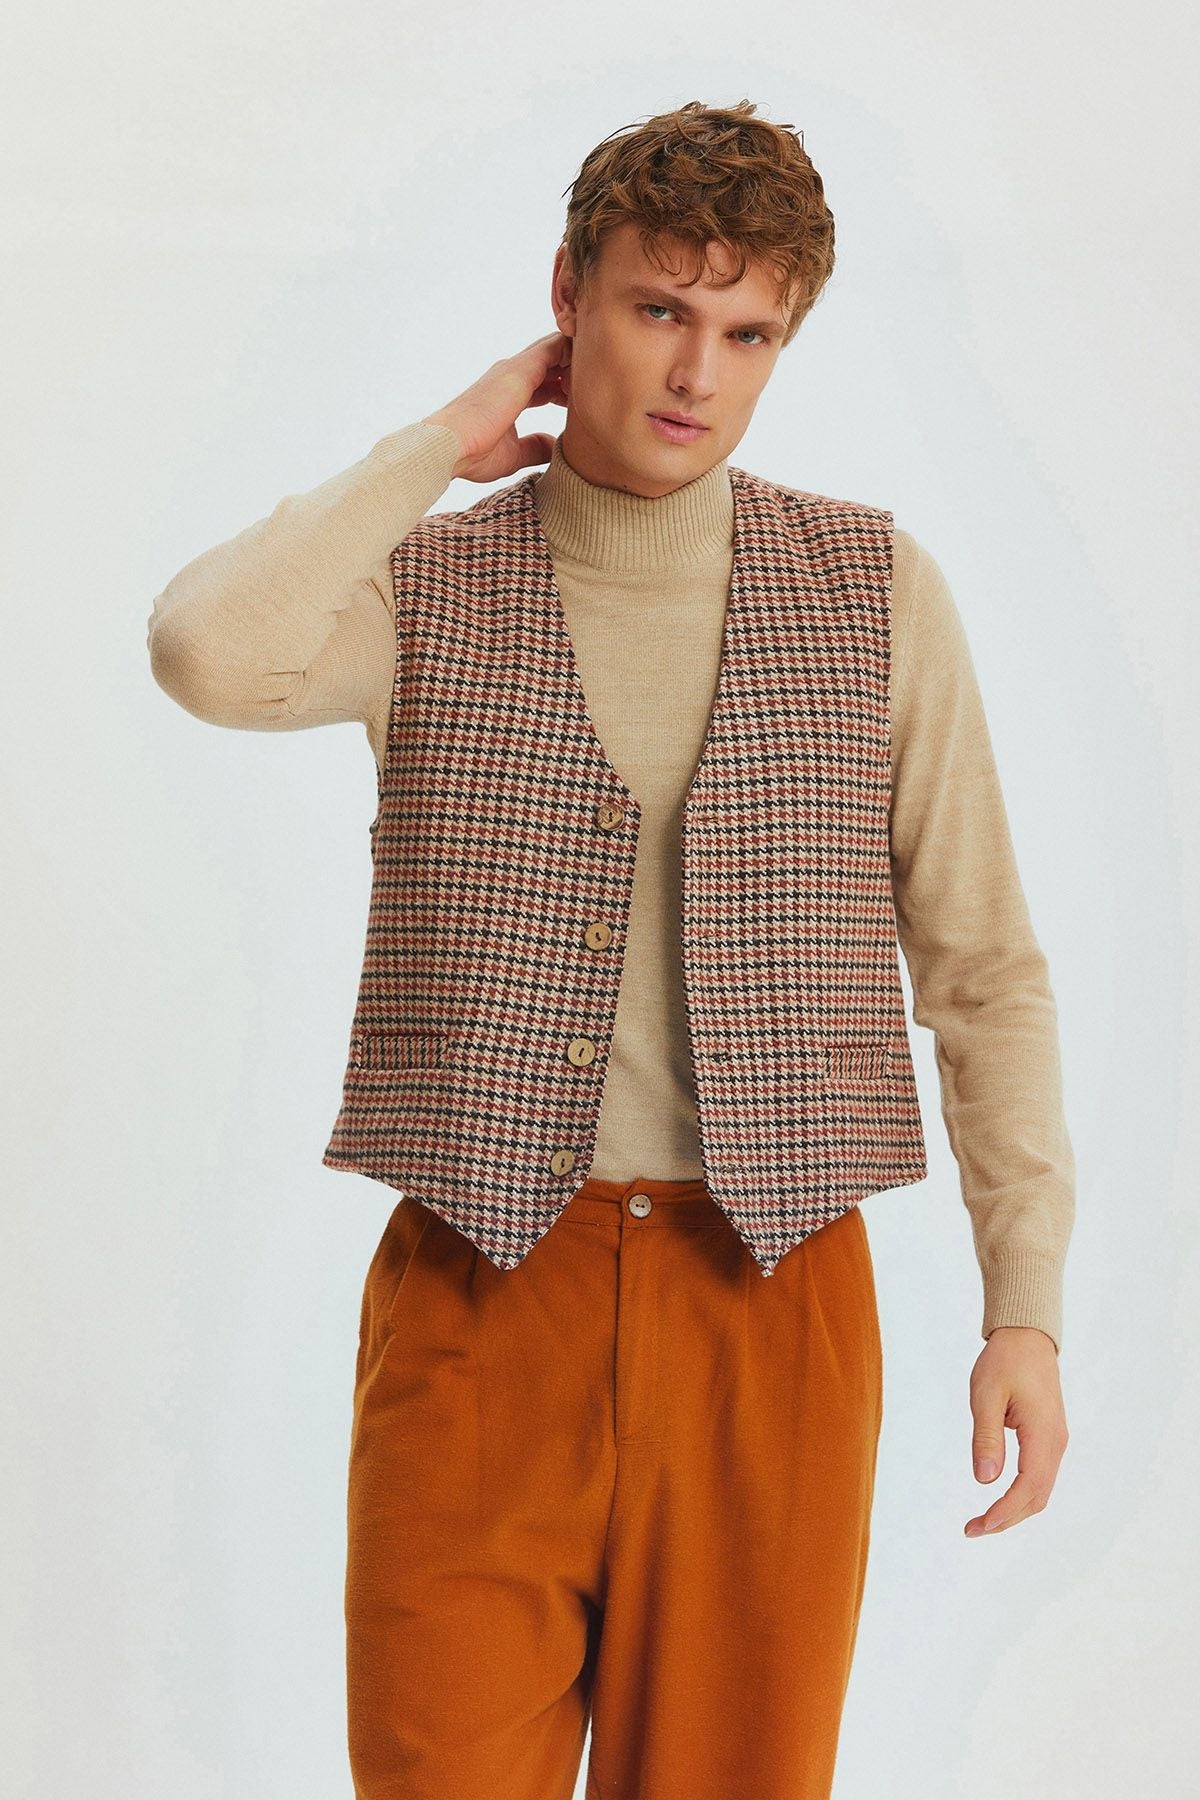 Bohemian Style Classic Cut Men's Vest Brown